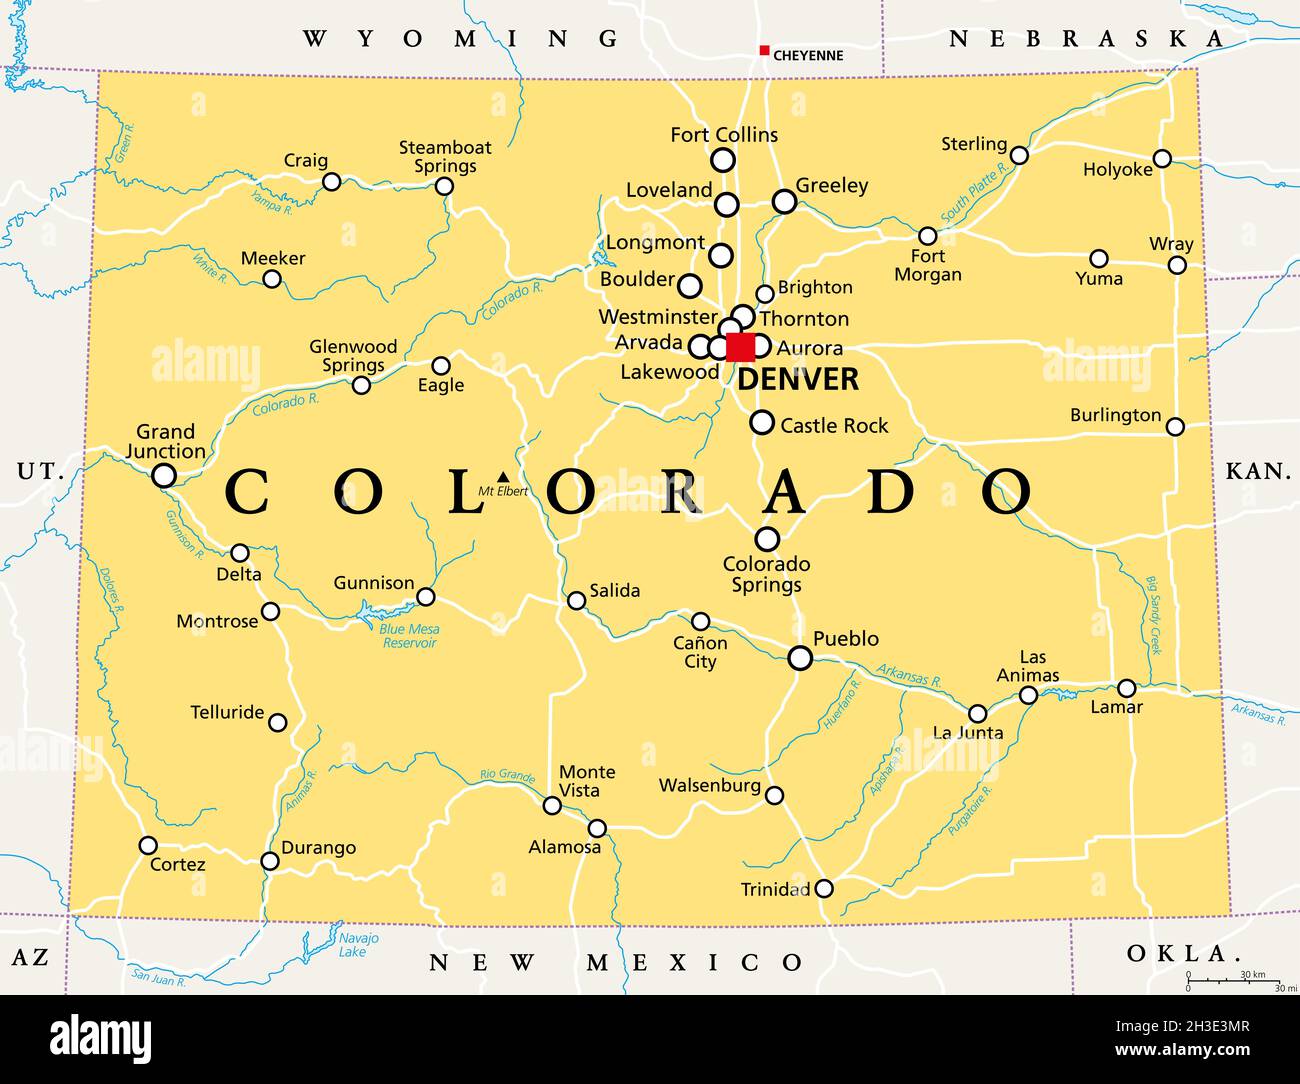 Colorado, CO carte politique avec la capitale Denver, les rivières et les lacs les plus importants.Dans la sous-région de la montagne Ouest des États-Unis occidentaux. Banque D'Images